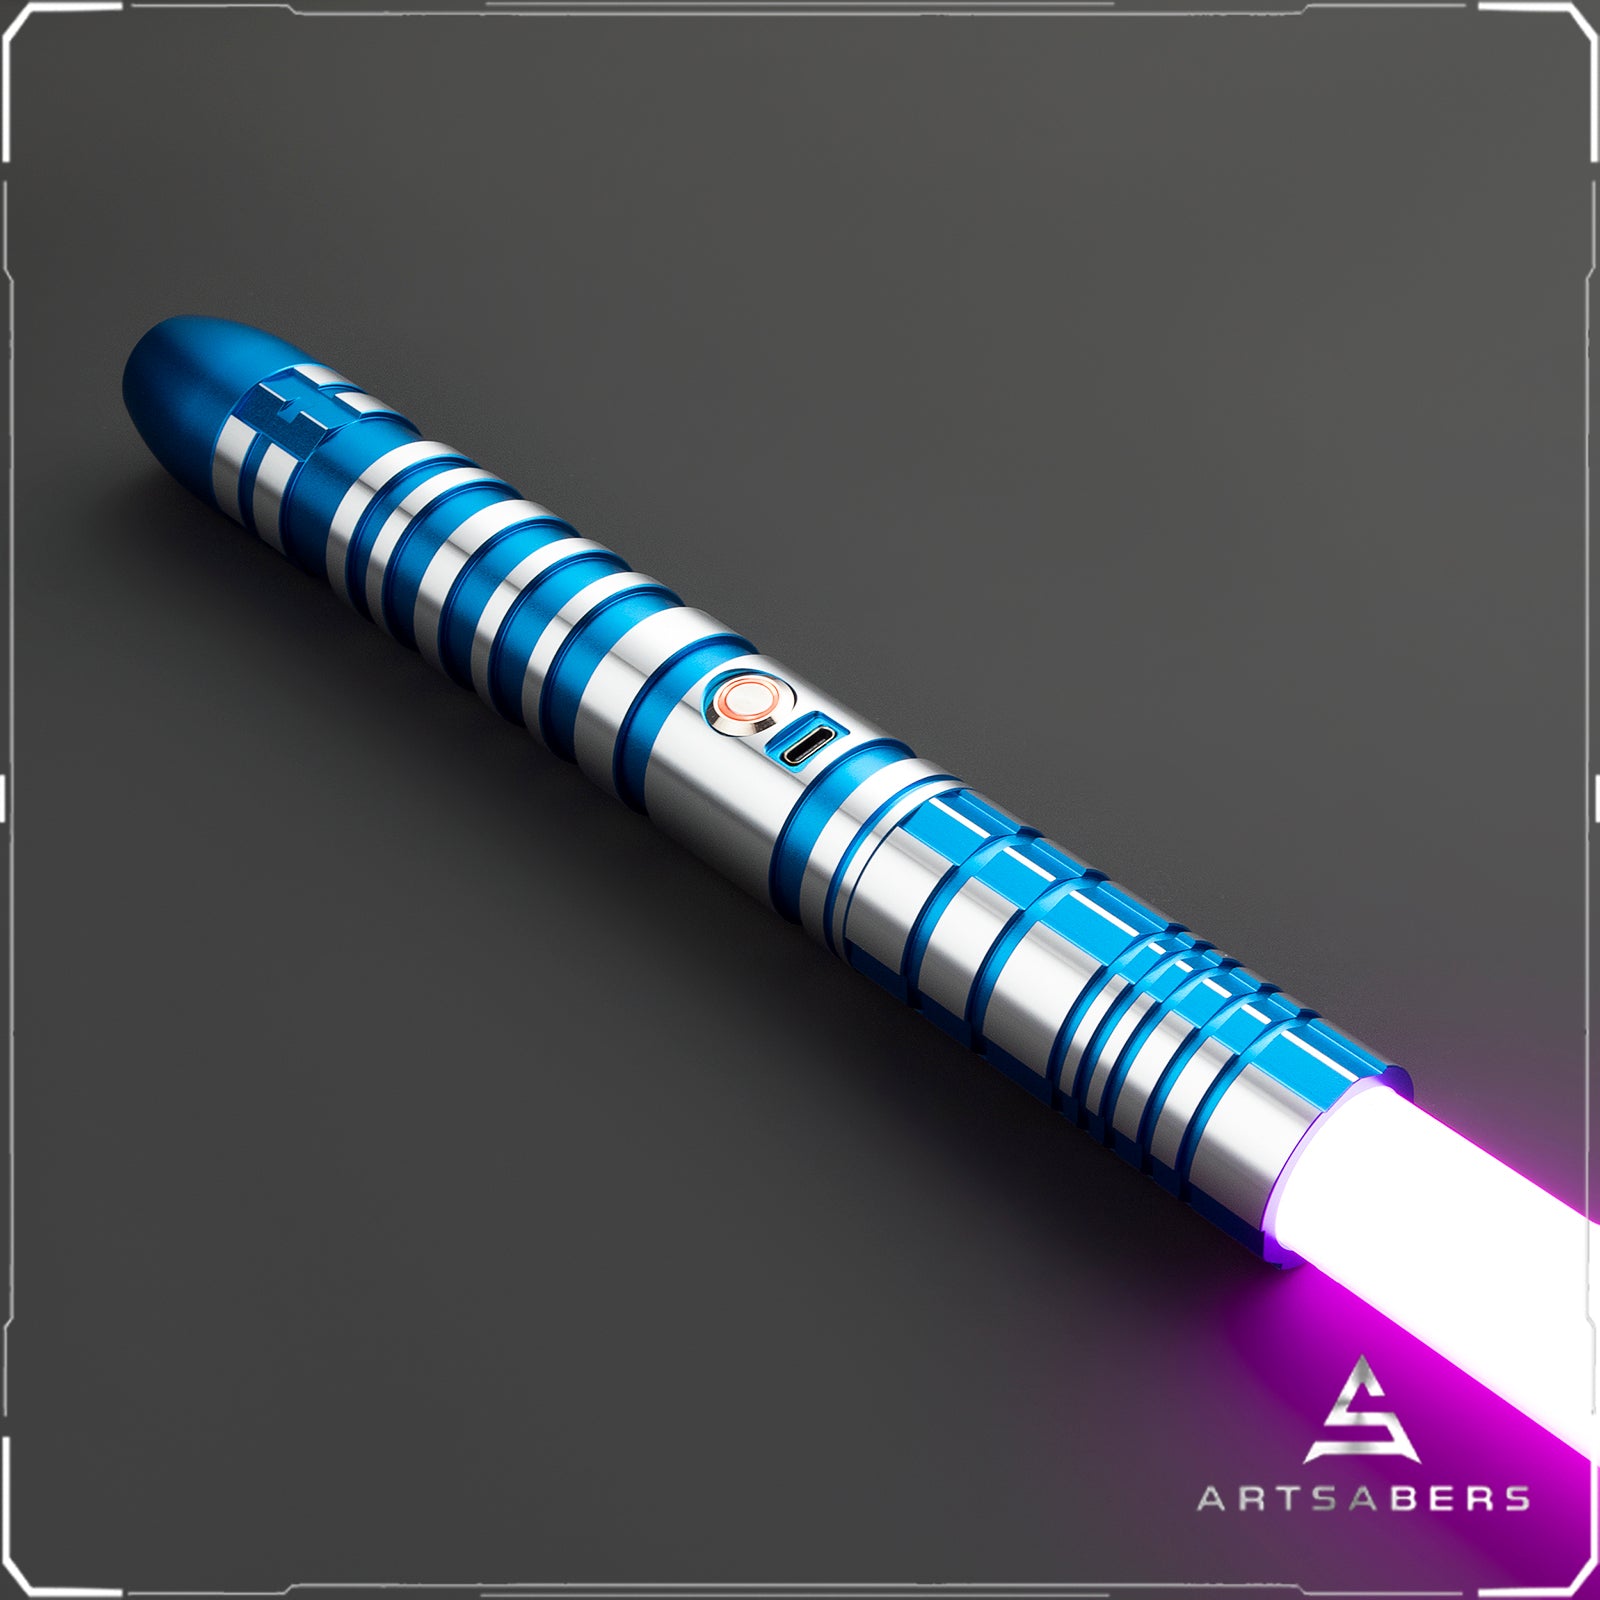 Blue ARRIO Lightsaber Force FX Lightsaber Star Wars ARTSABERS 